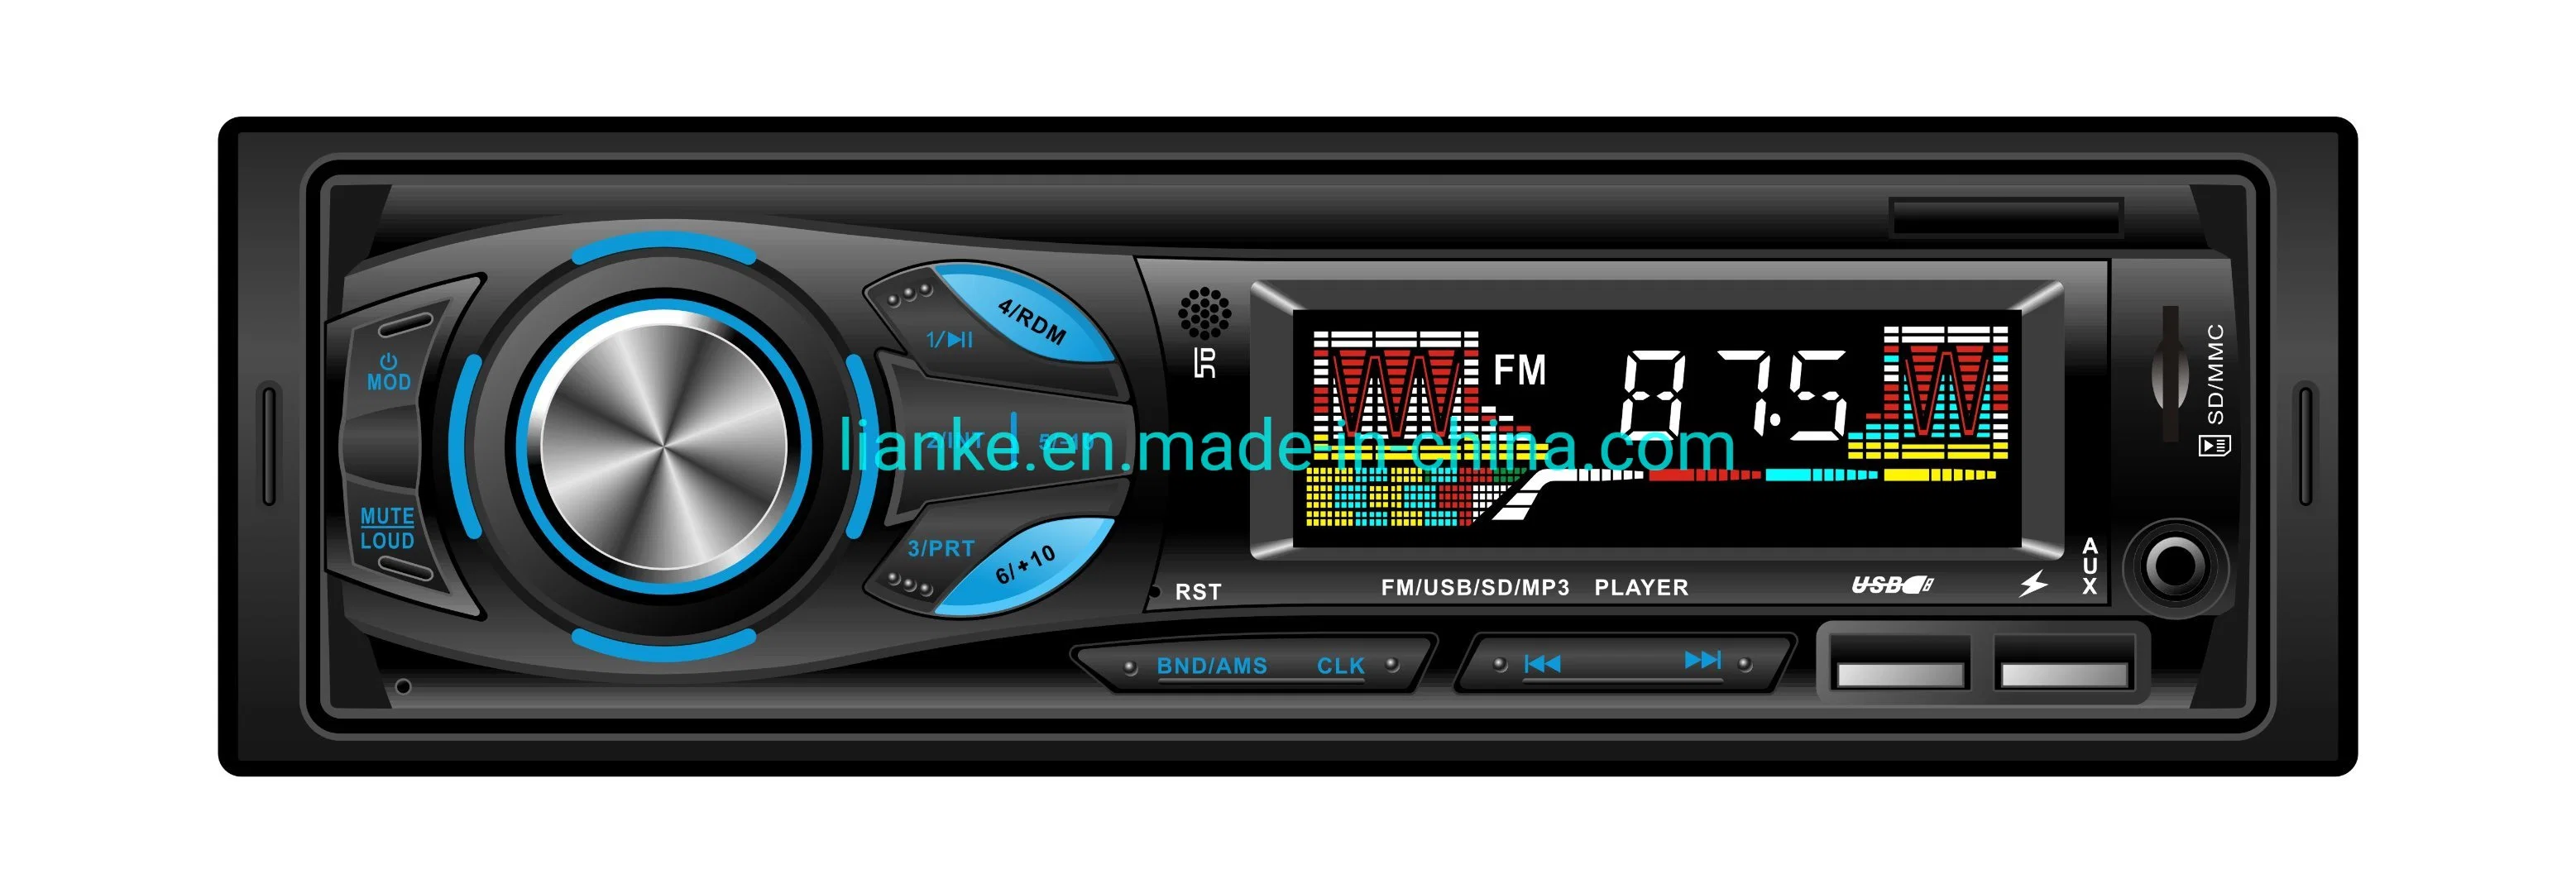 Carro MP3 Áudio Leitor multimédia com a FM/USB